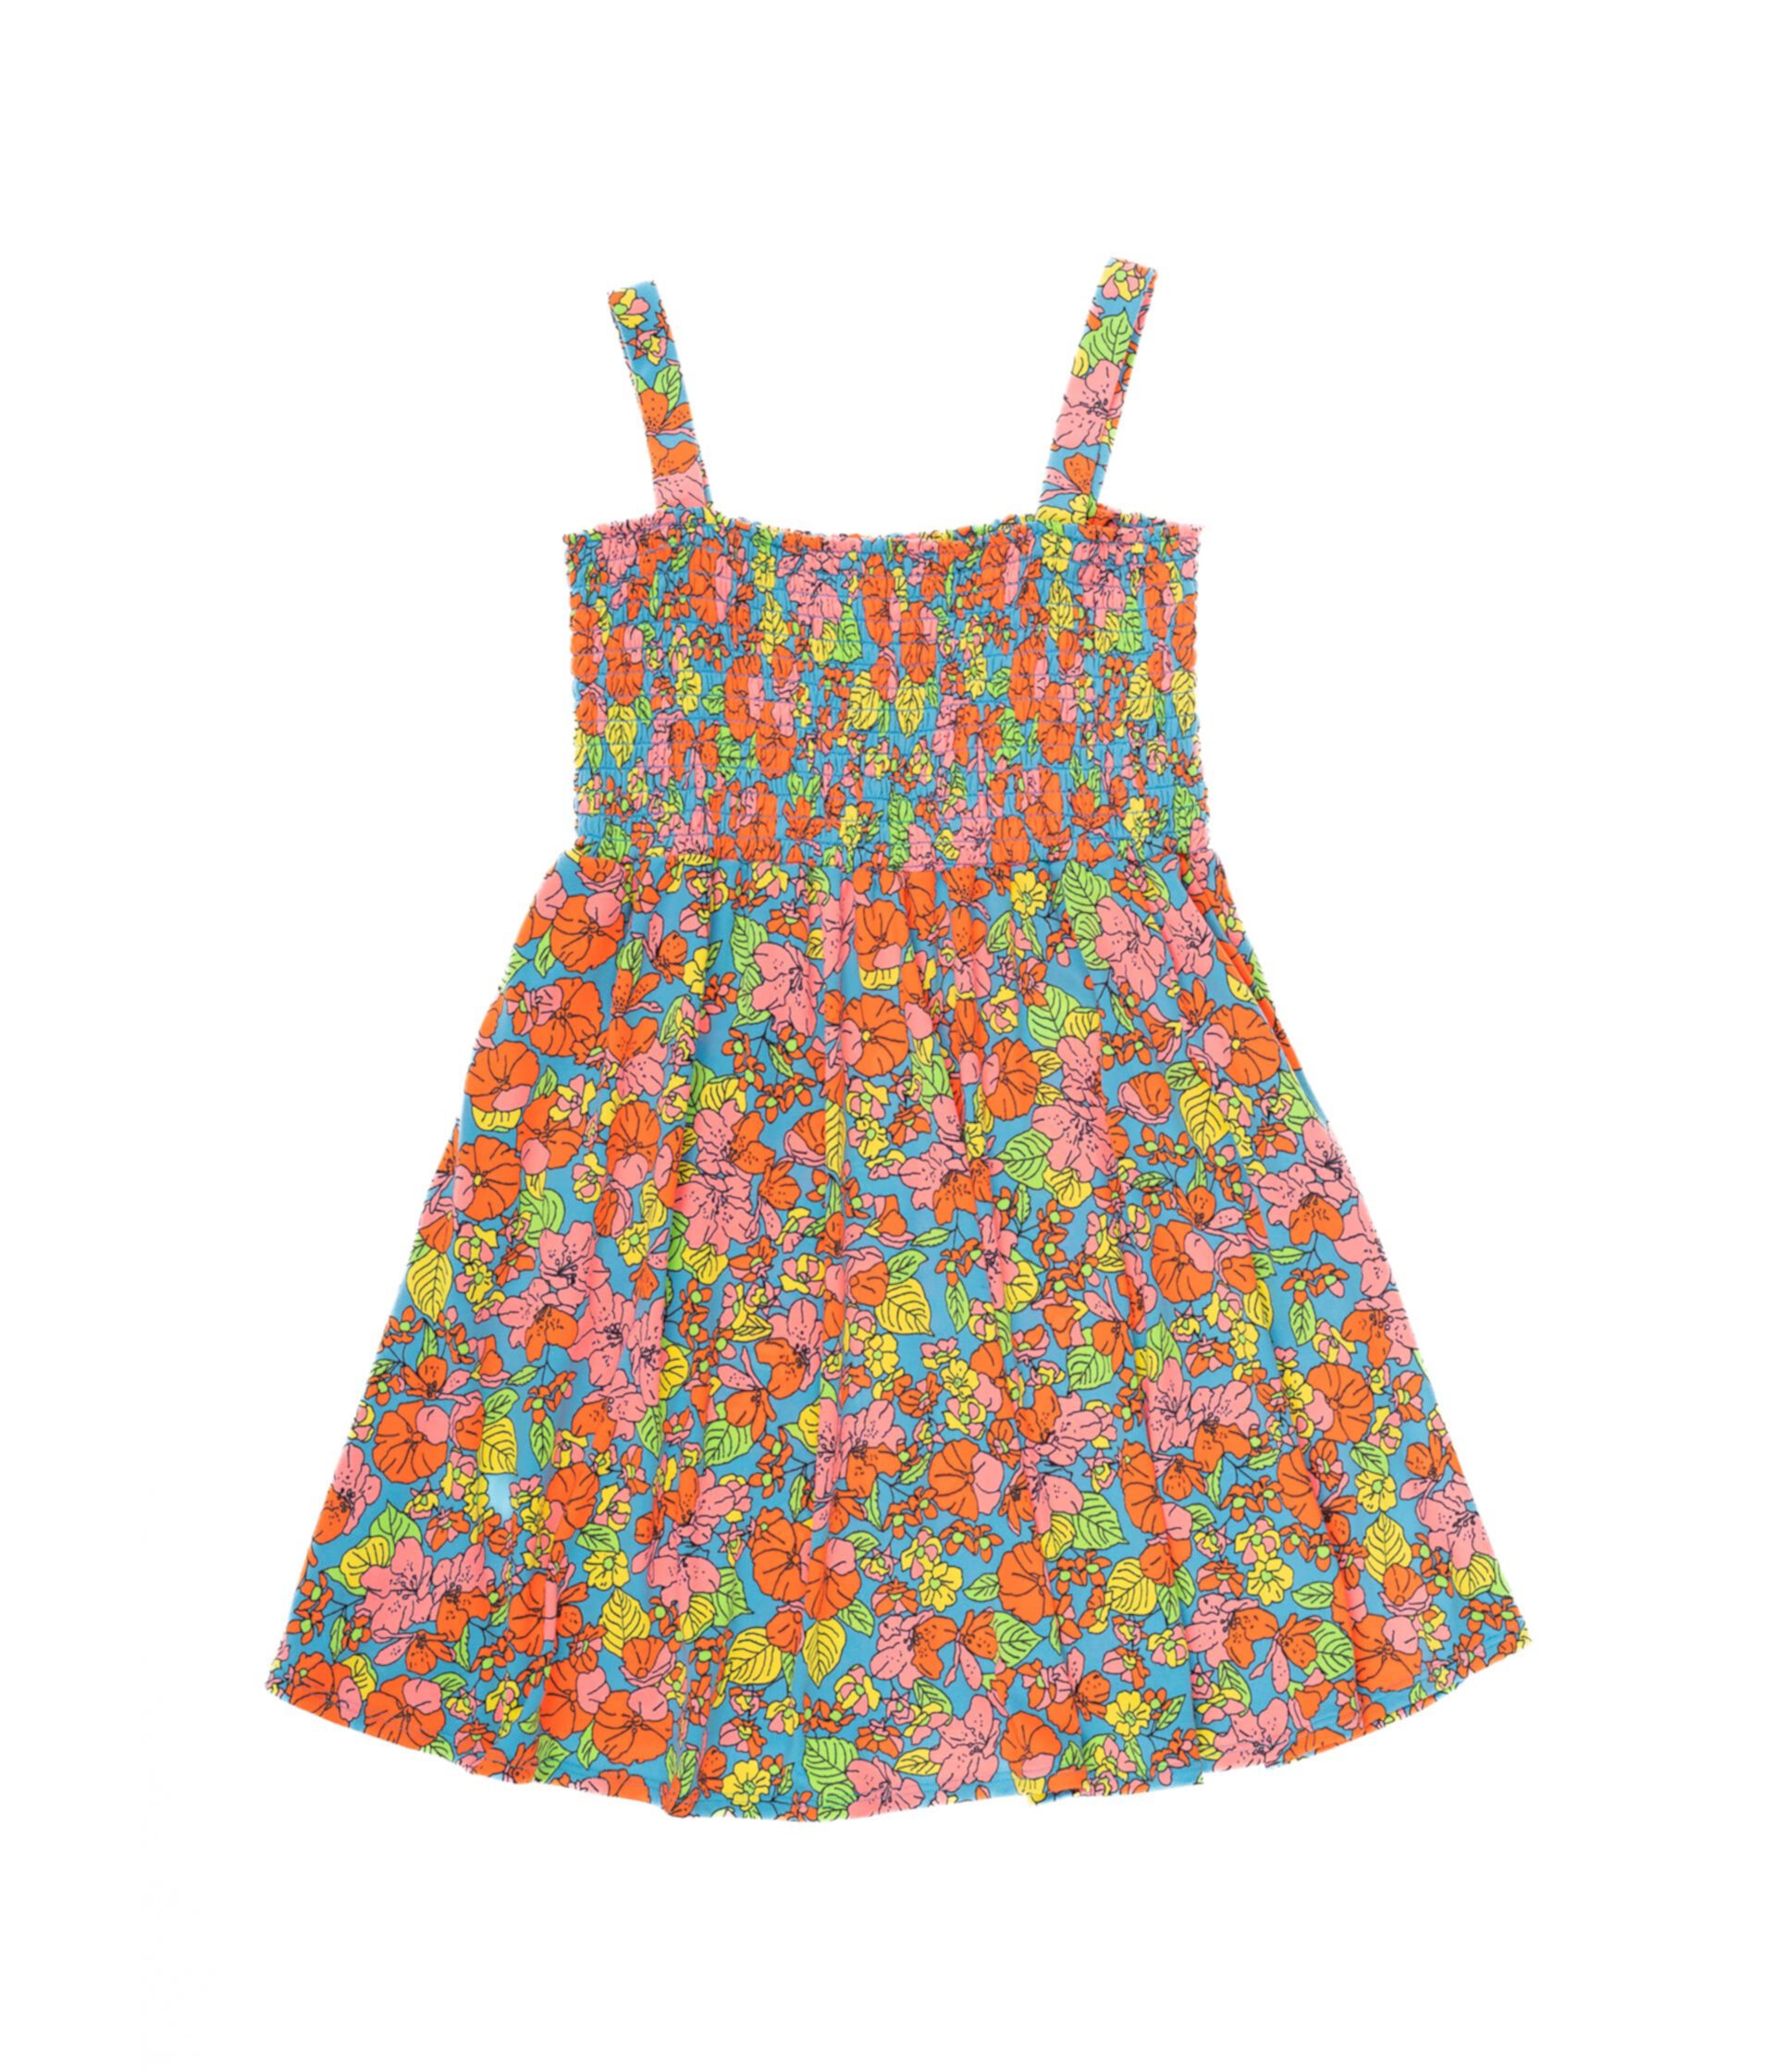 Пляжное платье Poppy Bouquet (Маленькие дети/Большие дети) Maaji Kids